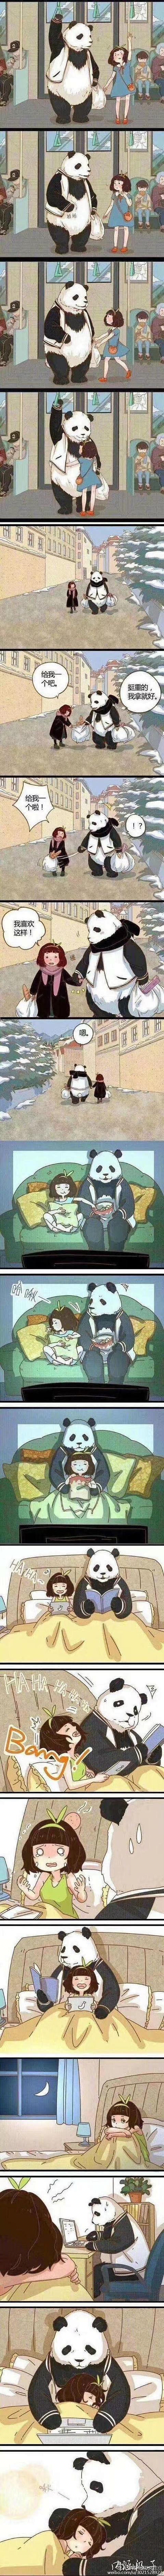 知道为什么暖男在图中是熊猫吗，因为暖男稀...